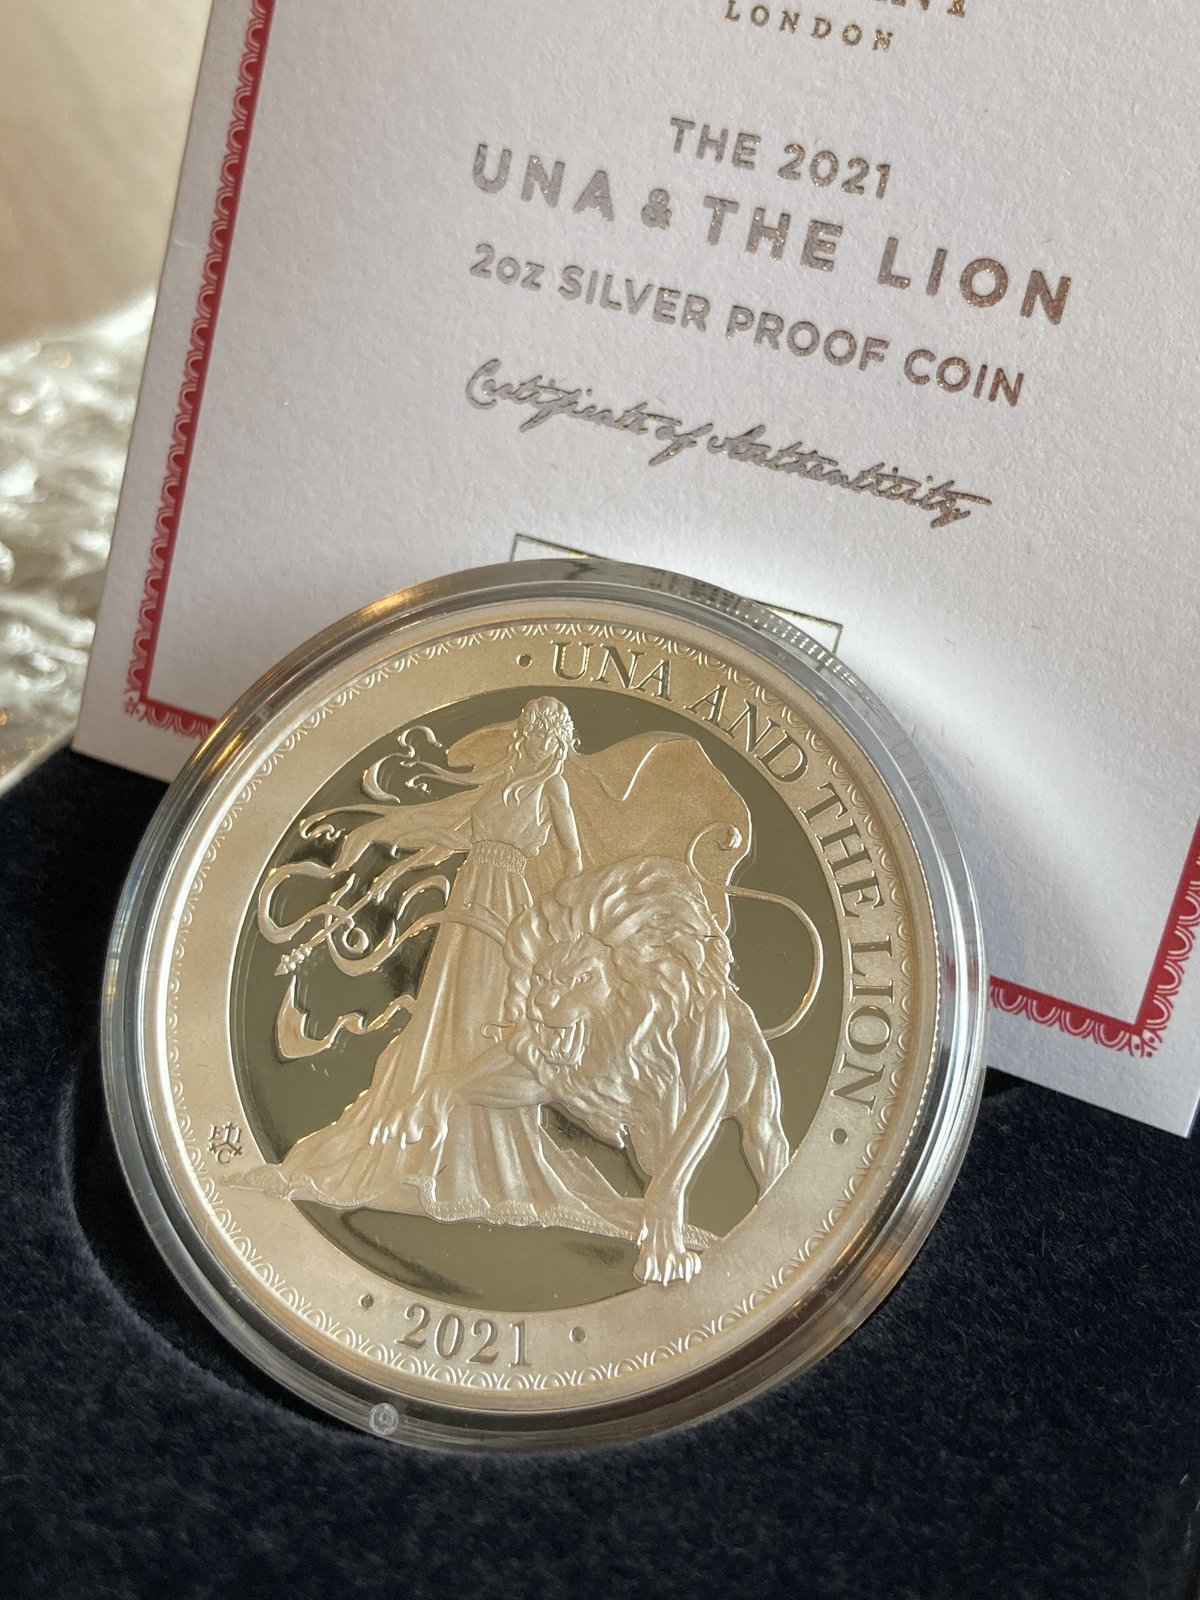 2オンス銀貨 ウナとライオン 2021 イギリス領セントヘレナ造幣局 2